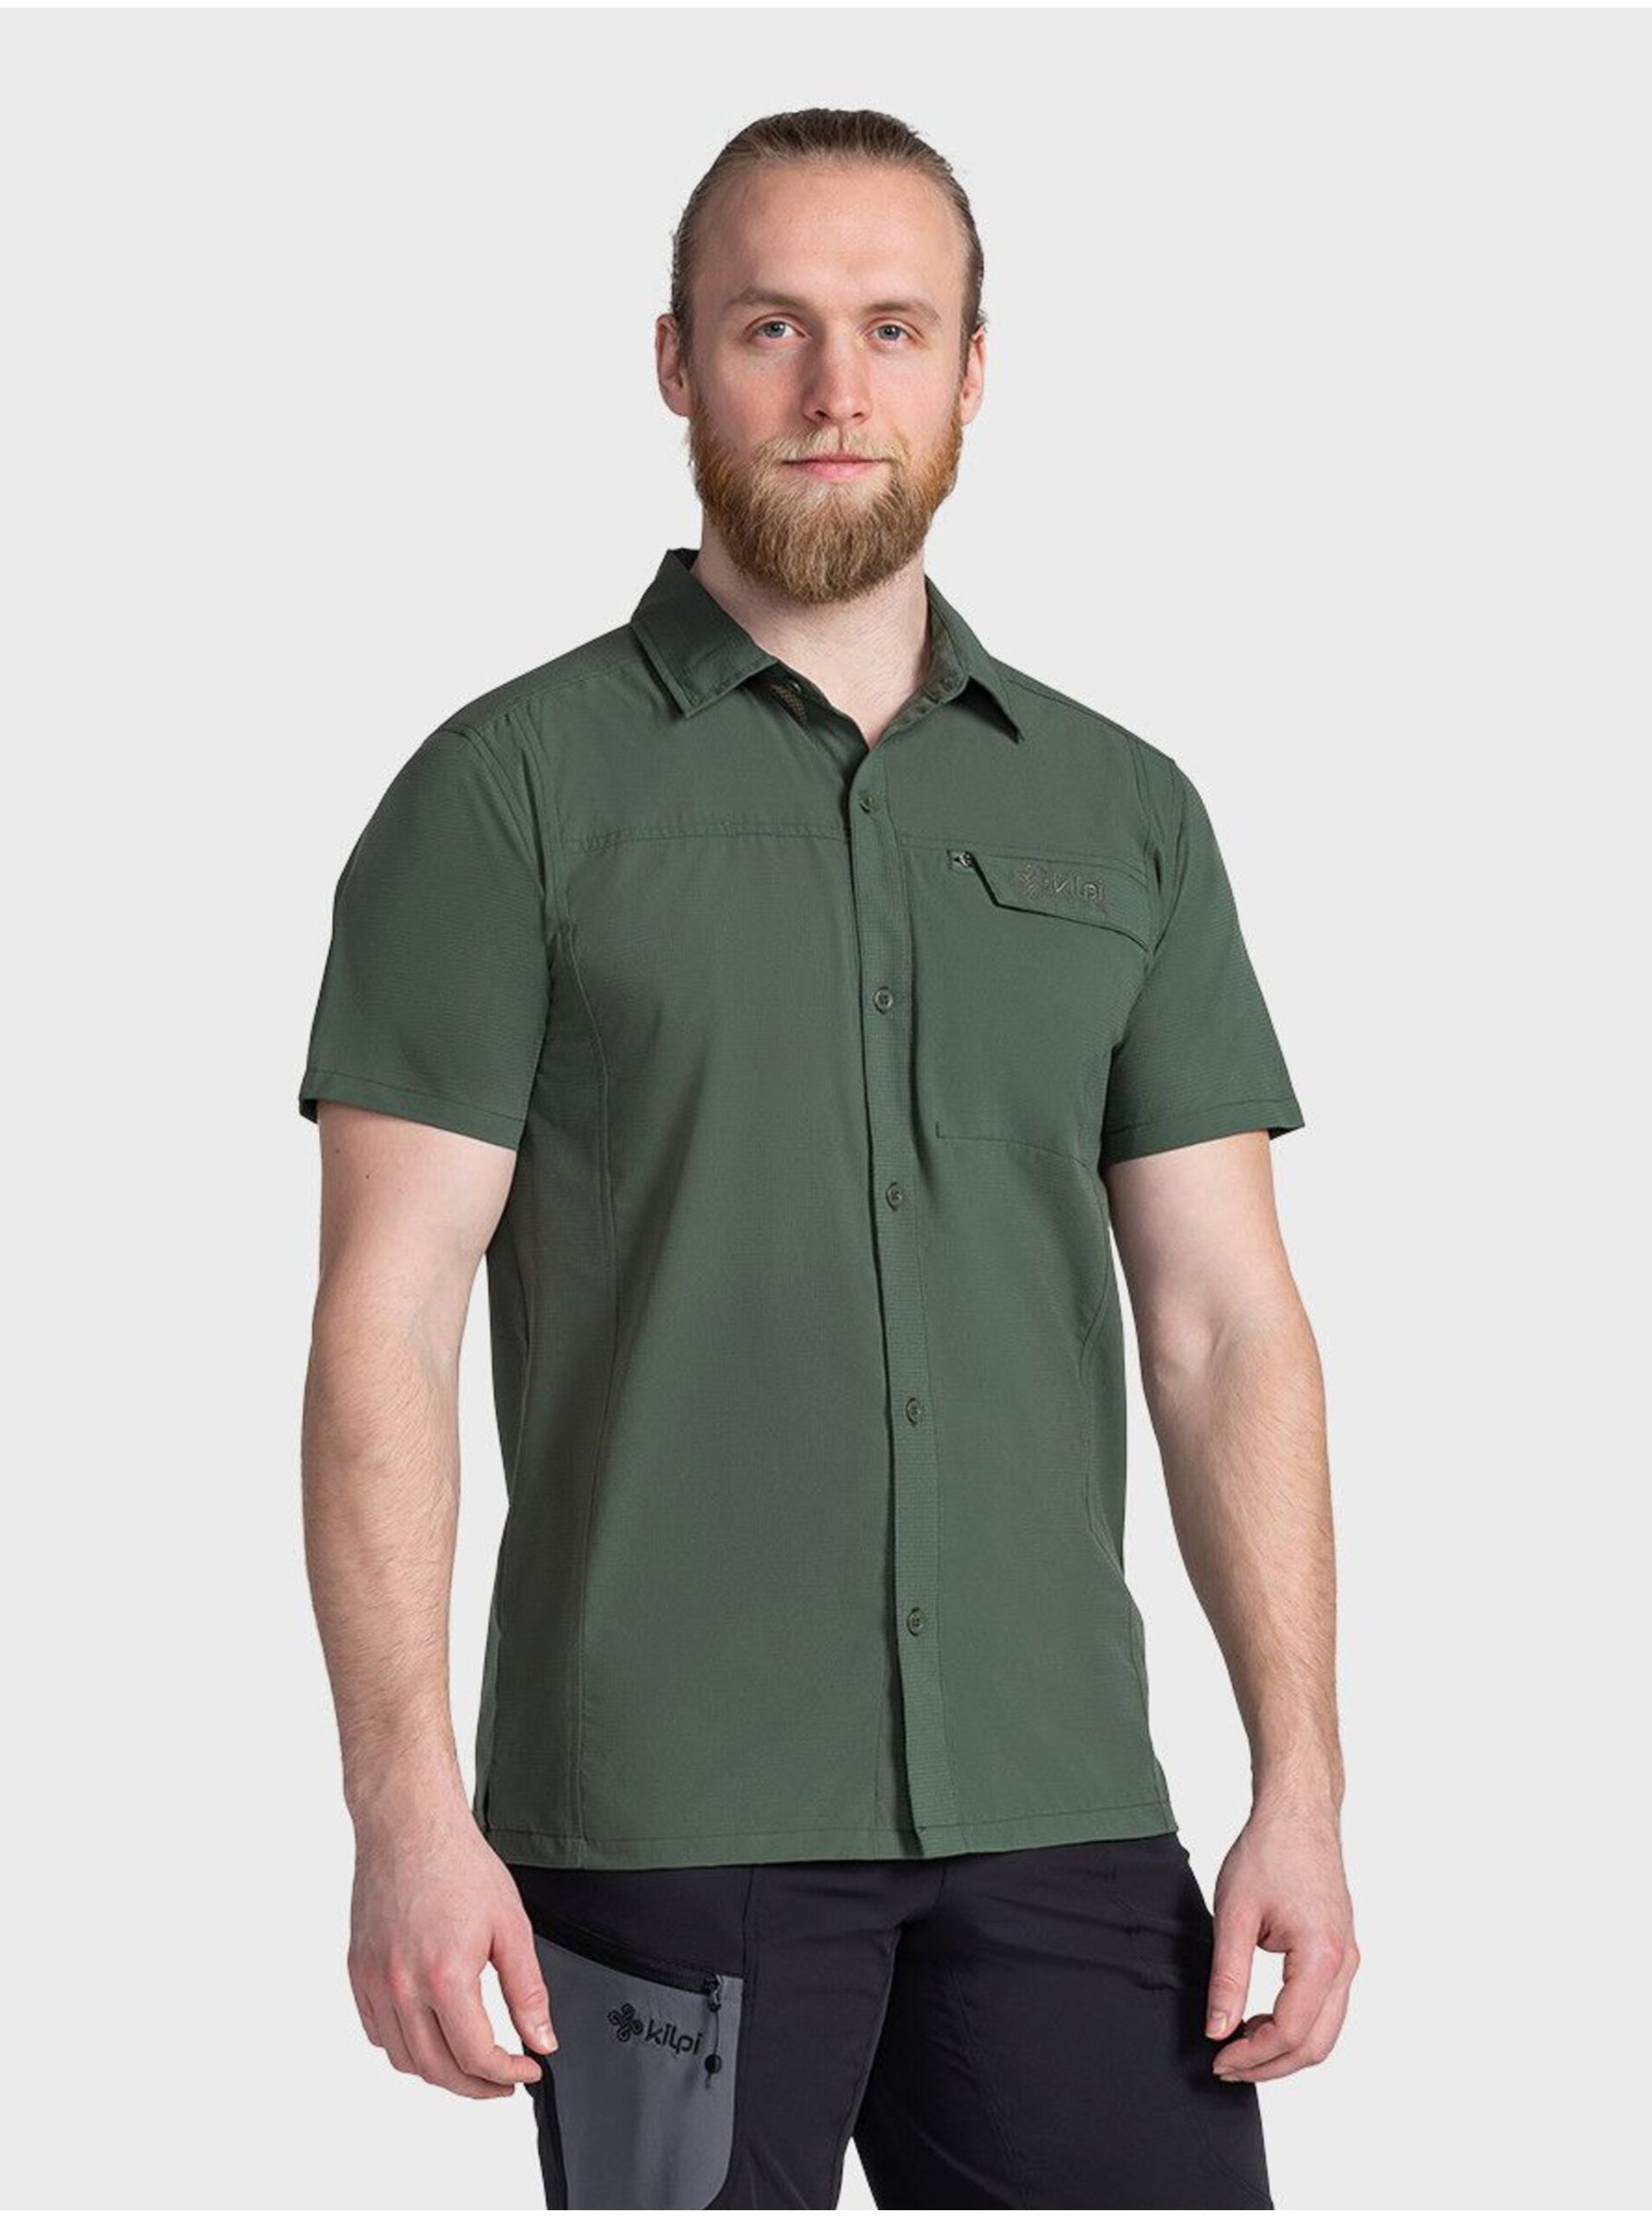 E-shop Tmavě zelená pánská sportovní košile s krátkým rukávem Kilpi BOMBAY